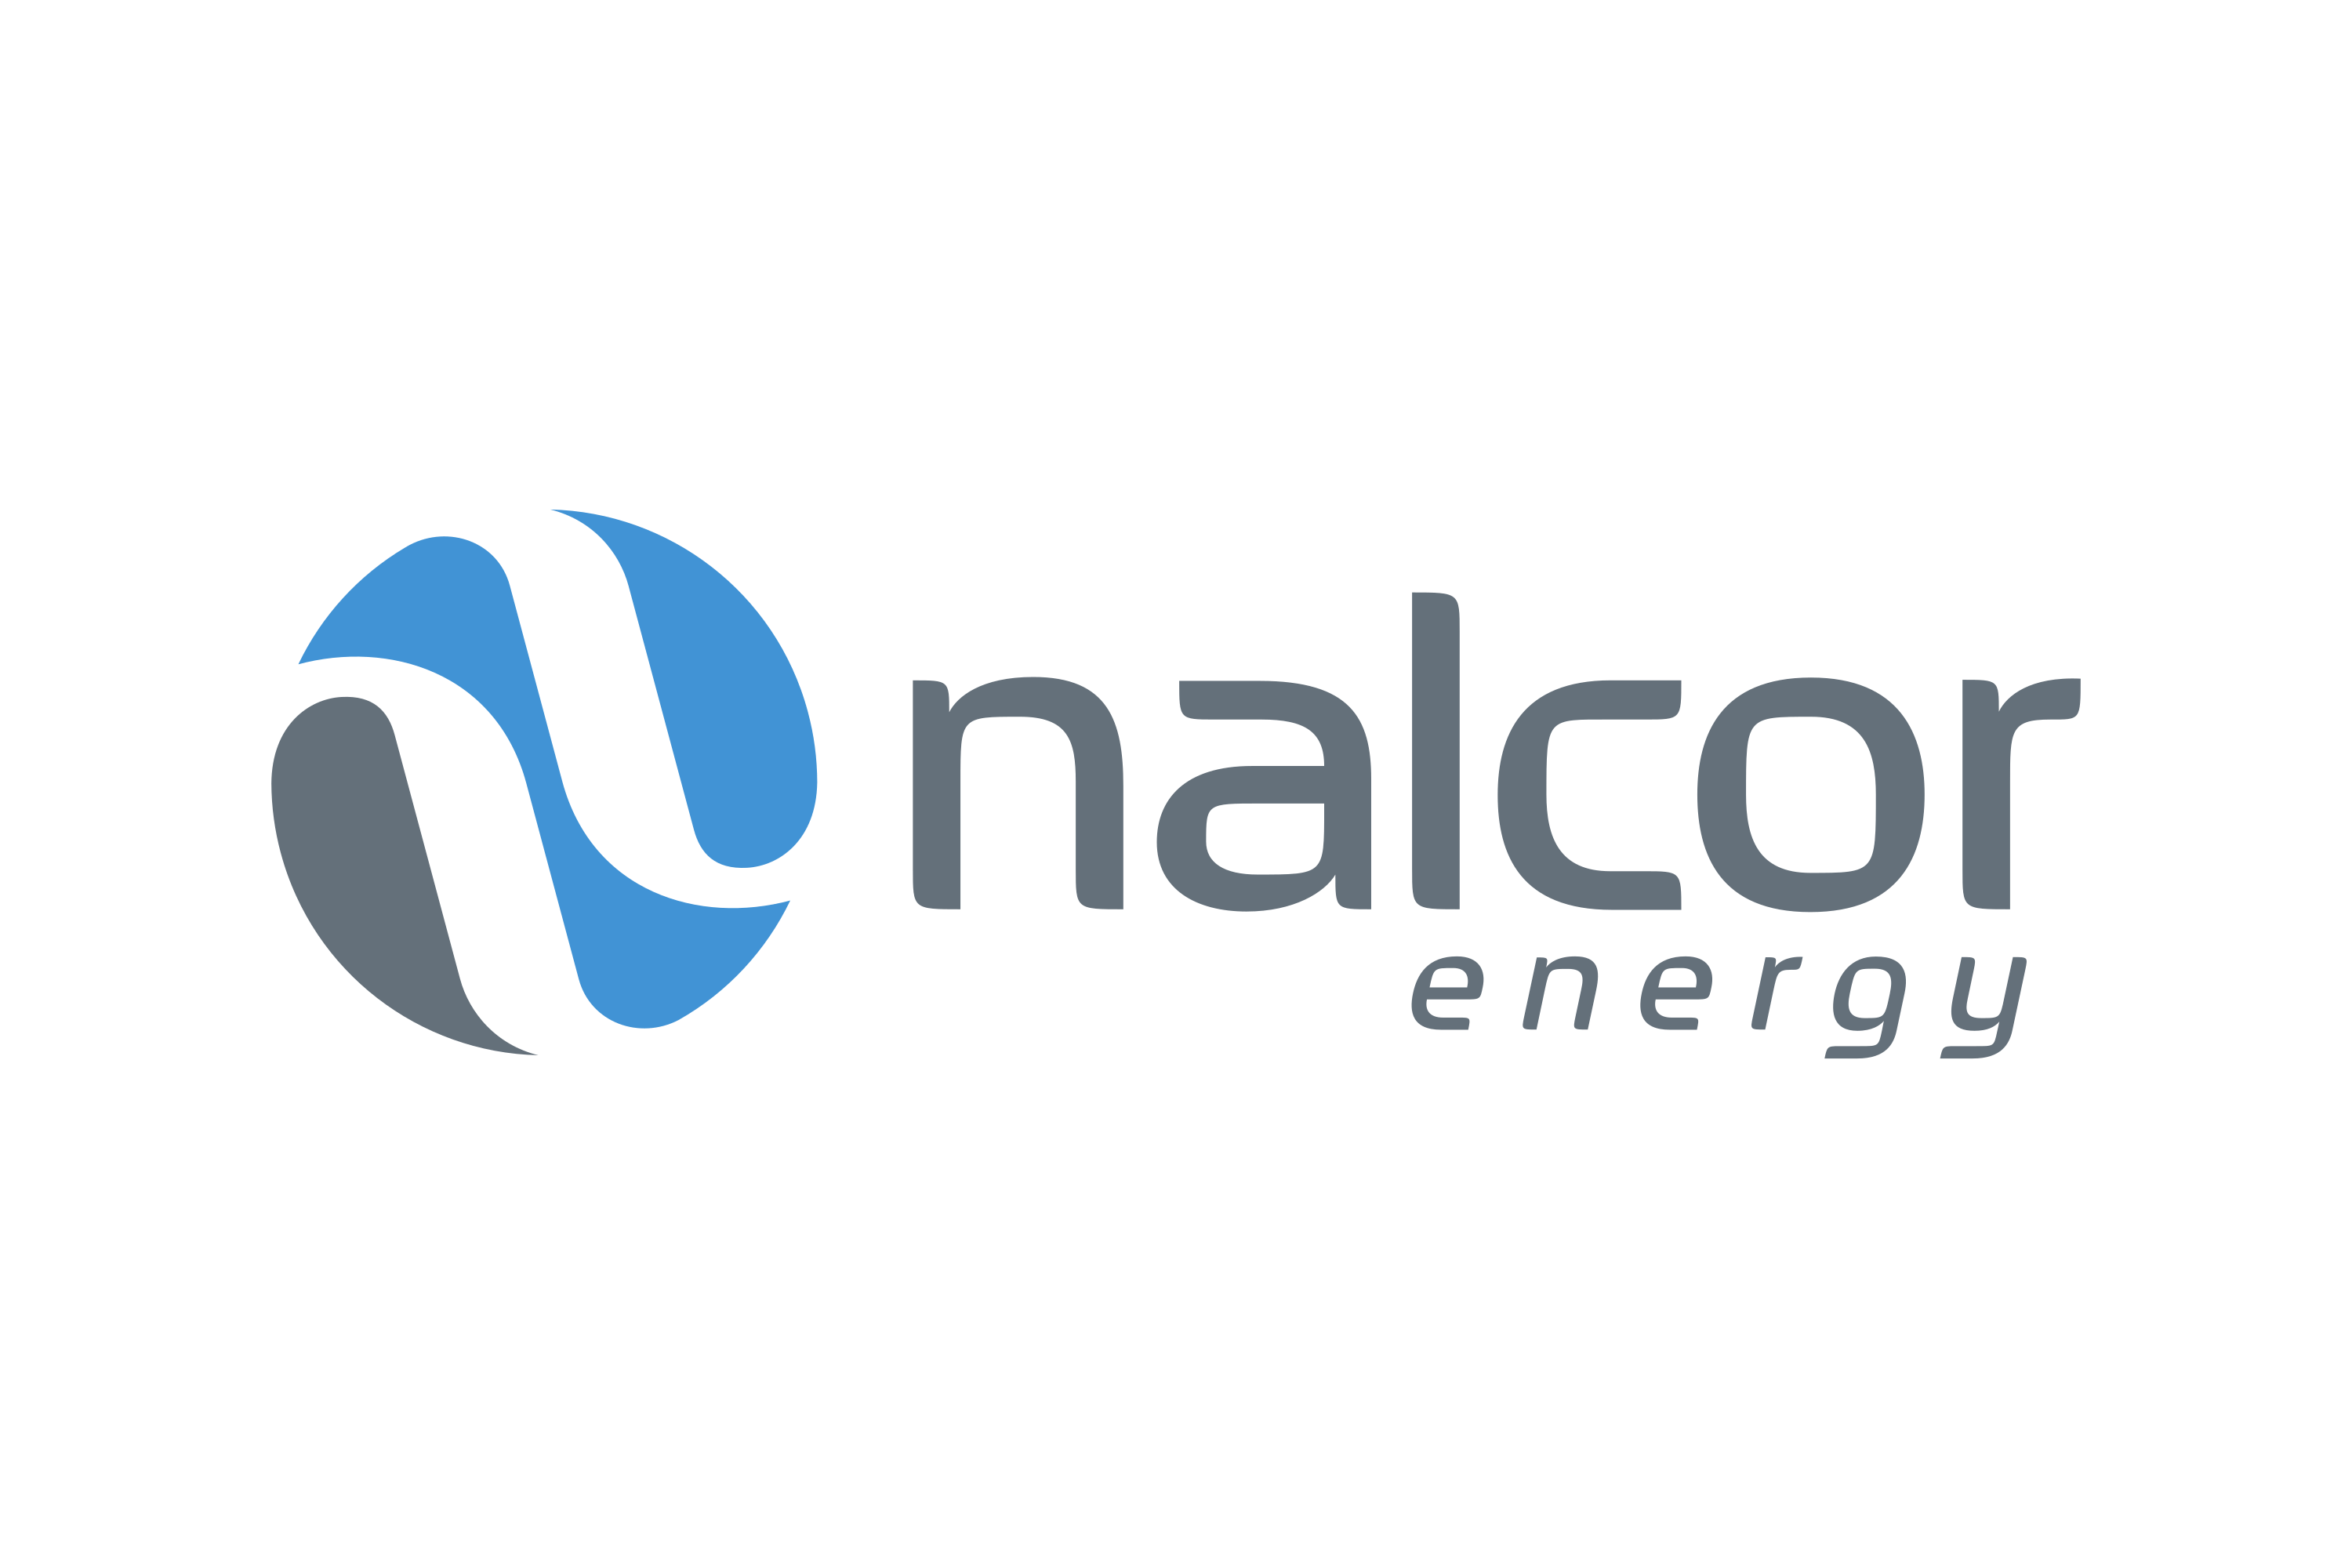 Nalcor Energy Logo